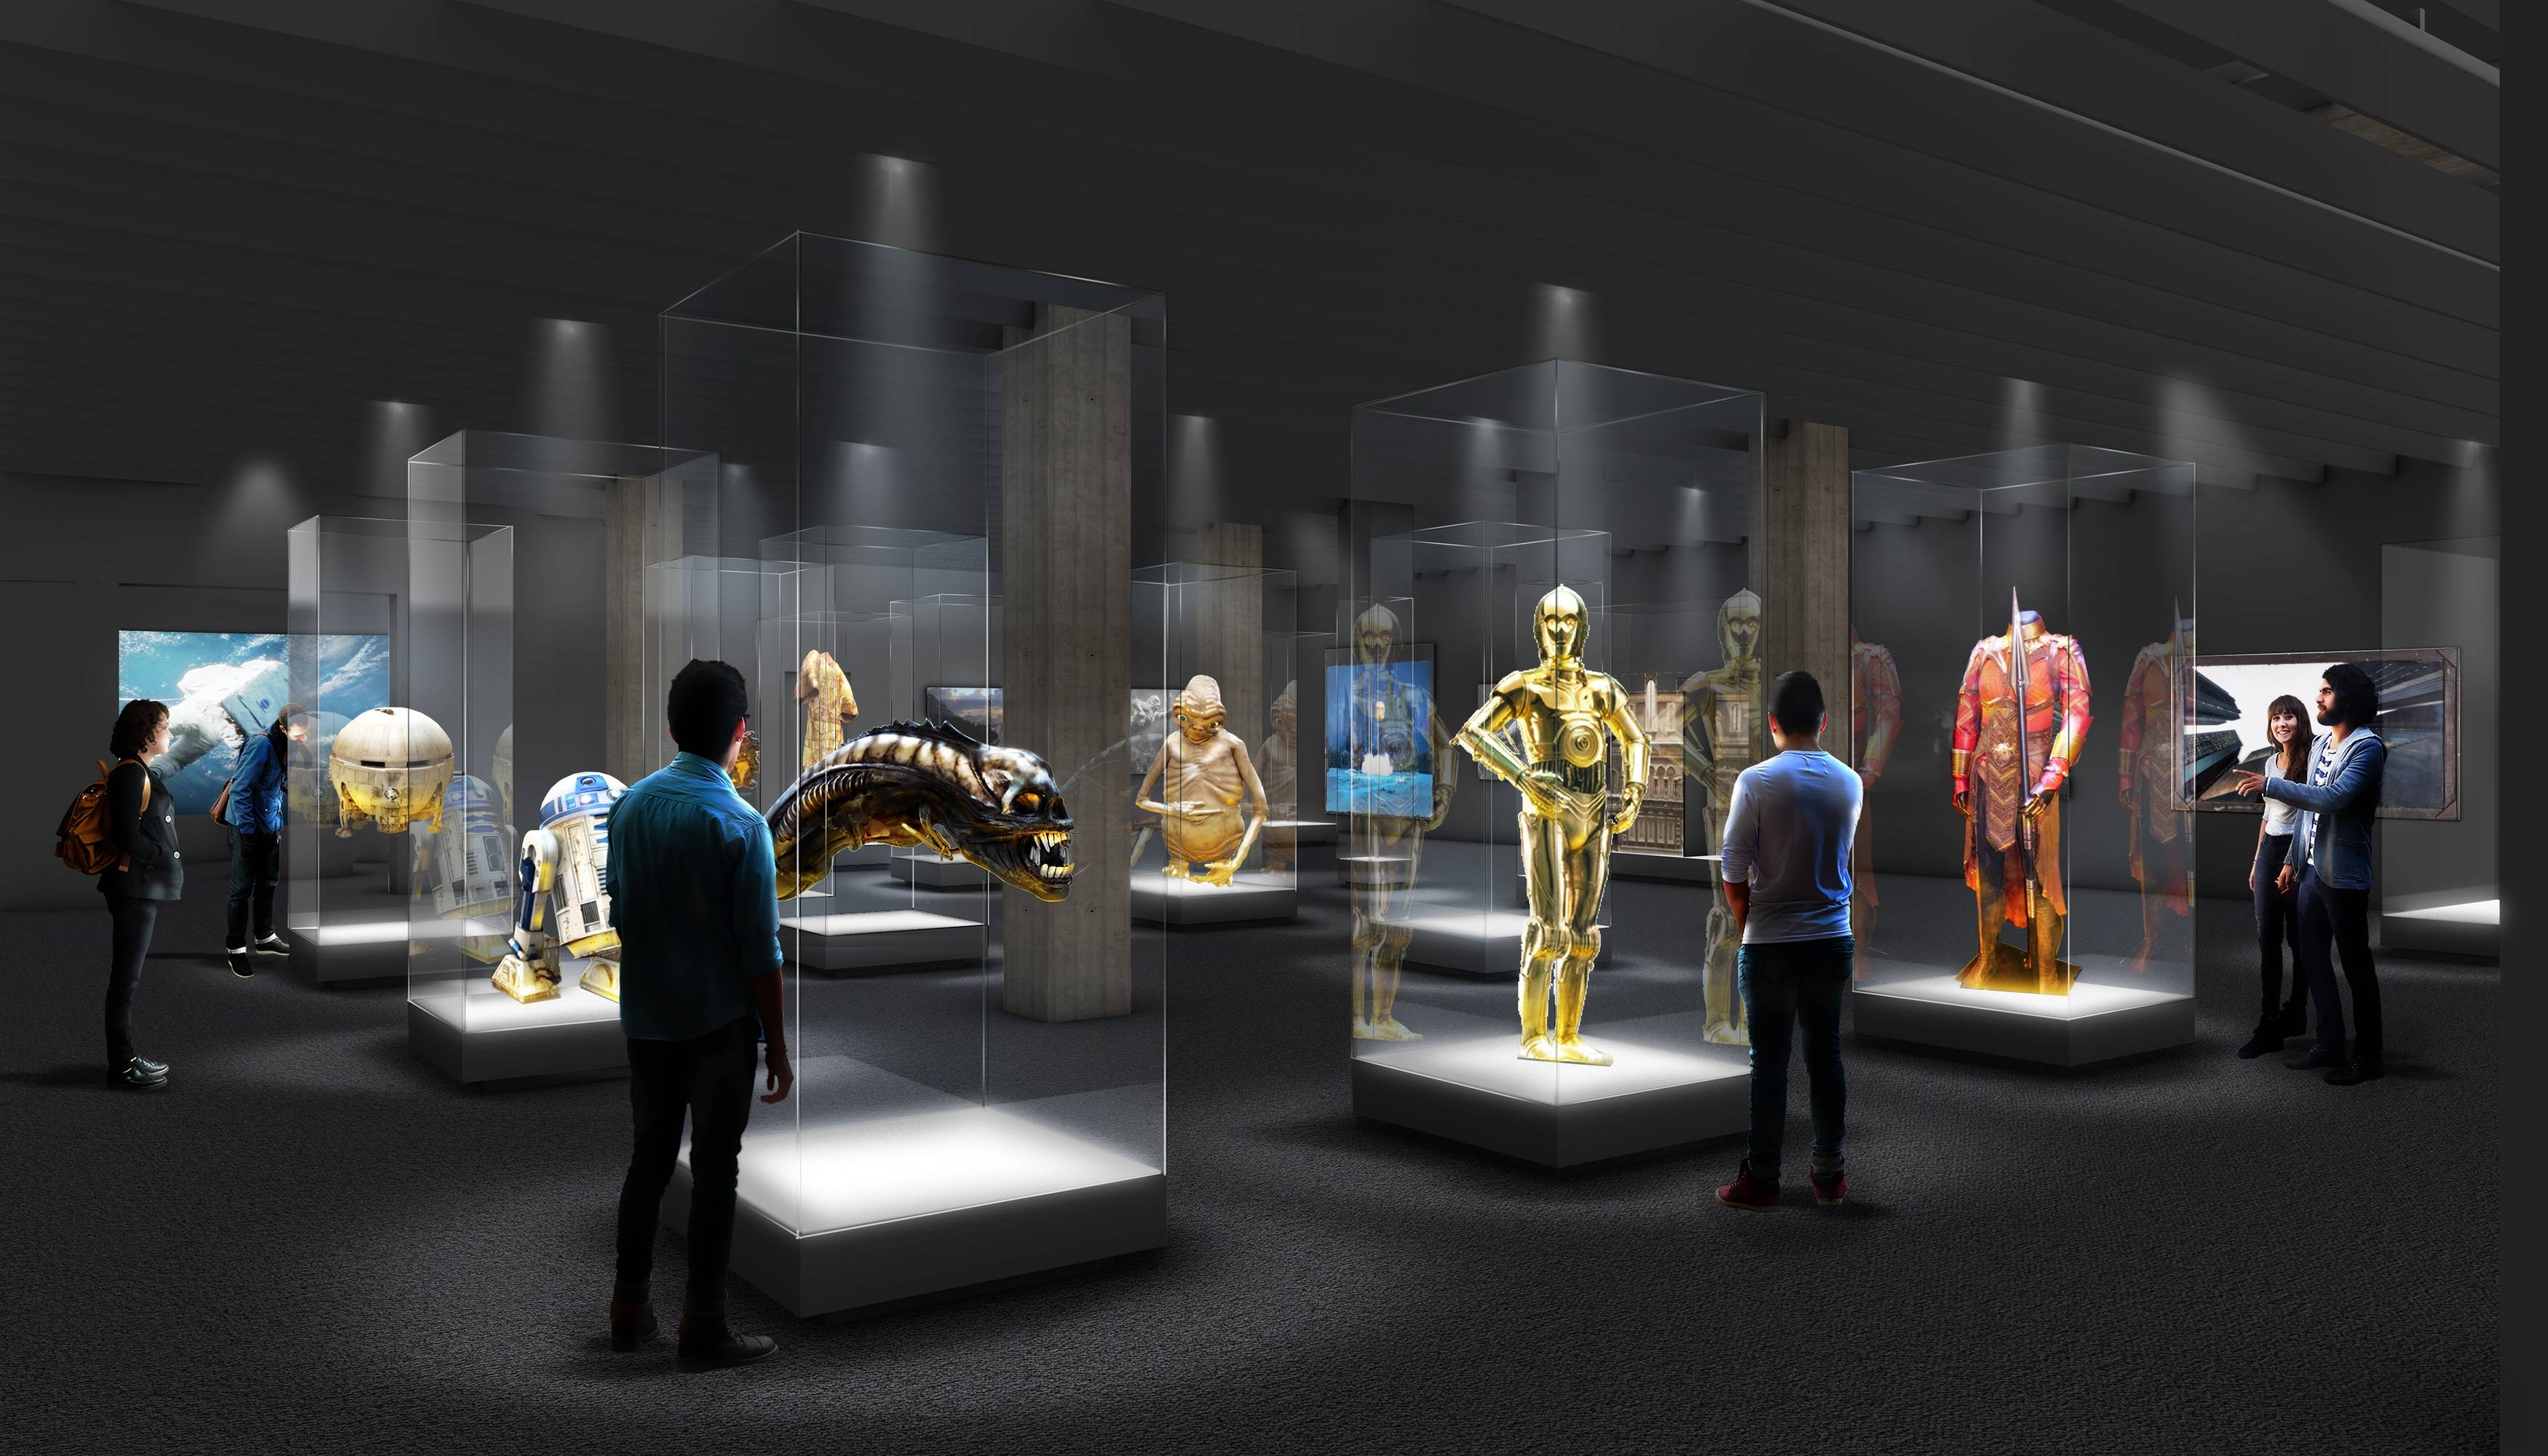 图片展示了一间展览室，里面有多个展示柜展出不同的物品，包括金色机器人模型，几位观众正在观看和讨论。